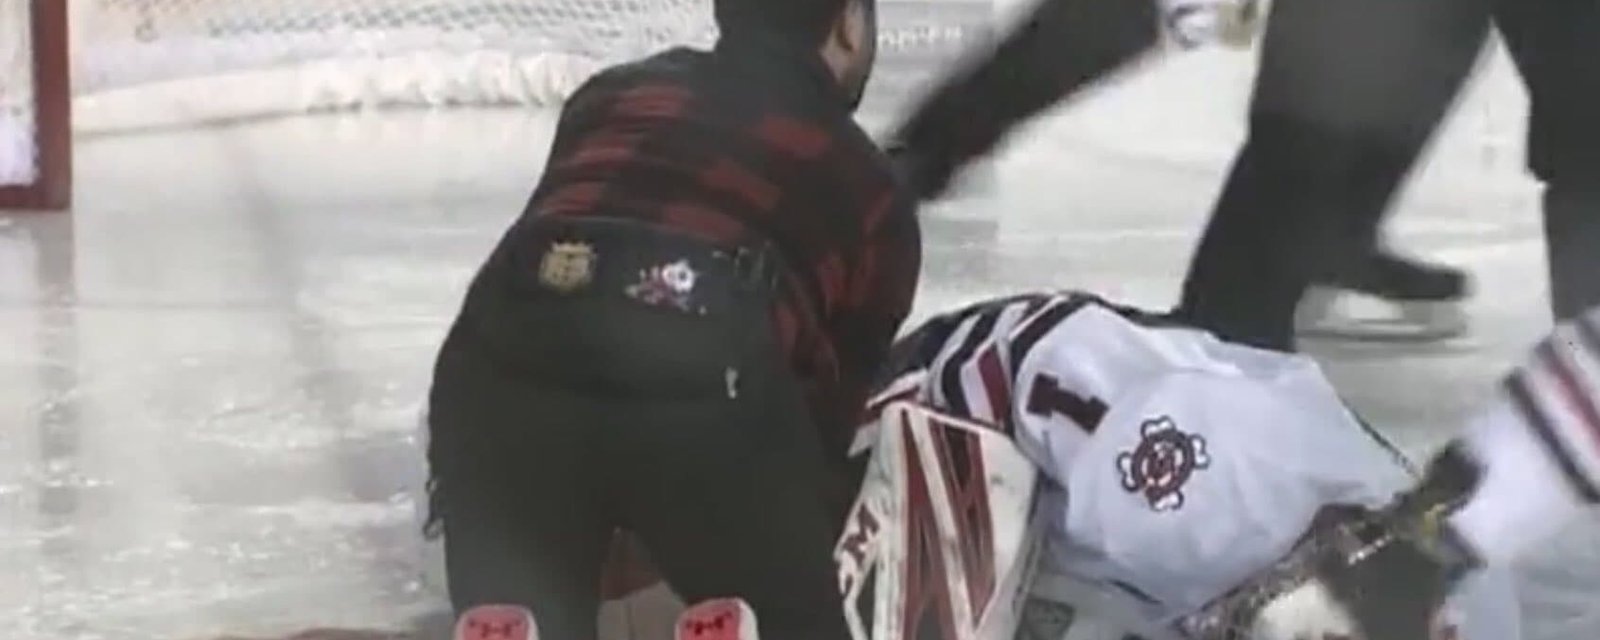 Horrible scène dans la OHL: Un gardien baigne dans son sang suite à une grave coupure